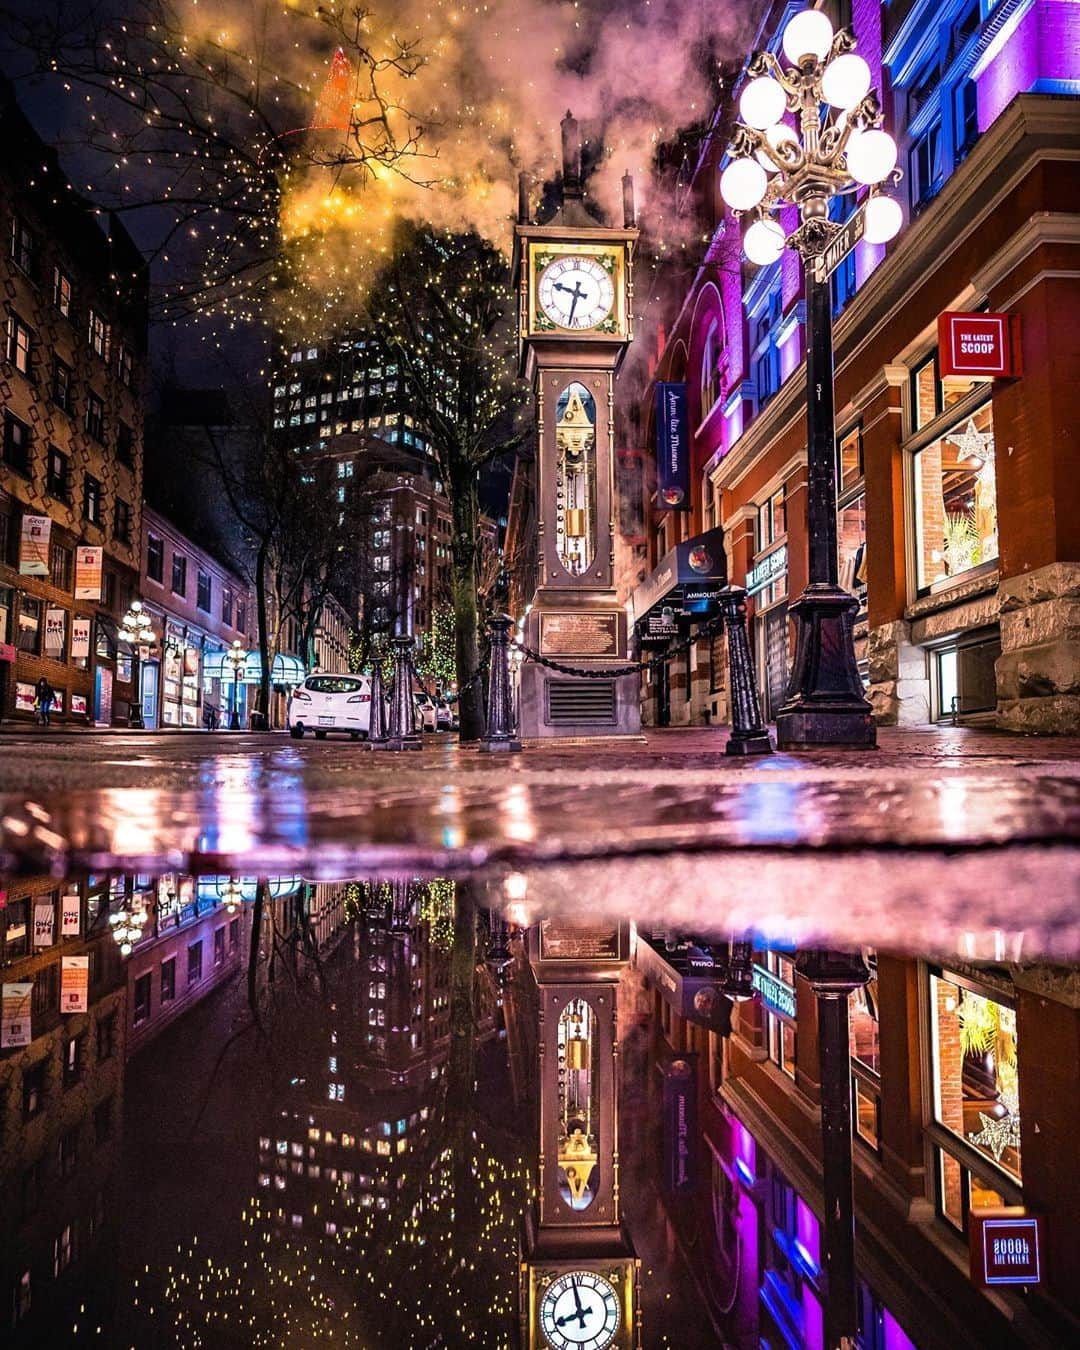 バンクーバー観光局- Tourism Vancouverのインスタグラム：「雨が止んだ後のガスタウンの夜は、お散歩にぴったり。レンガが敷き詰められた道路とあたたかい街灯がしっとりした雰囲気を演出してくれますよ。水たまりに反射する街の風景も一緒に写真に収めてみてください。⁠ 📷 : @aboolife(Instagram)⁠ .⁠ .⁠ .⁠ #カナダ #バンクーバー #Vancouver #旅 #旅行 #女子旅 #旅好き #一人旅 #海外旅行 #トラベル #旅女子 #旅行好きな人と繋がりたい #旅好きな人と繋がりたい #旅行好き #旅行大好き #旅行行きたい #旅に出たい #海外 #旅の記録 #旅の思い出 #旅行記 #旅したくなるフォト #マイトリップ #マイトリ #retrip_global #風景 #世界一周 #ダレカニミセタイケシキ #ガスタウン #夜景ら部」